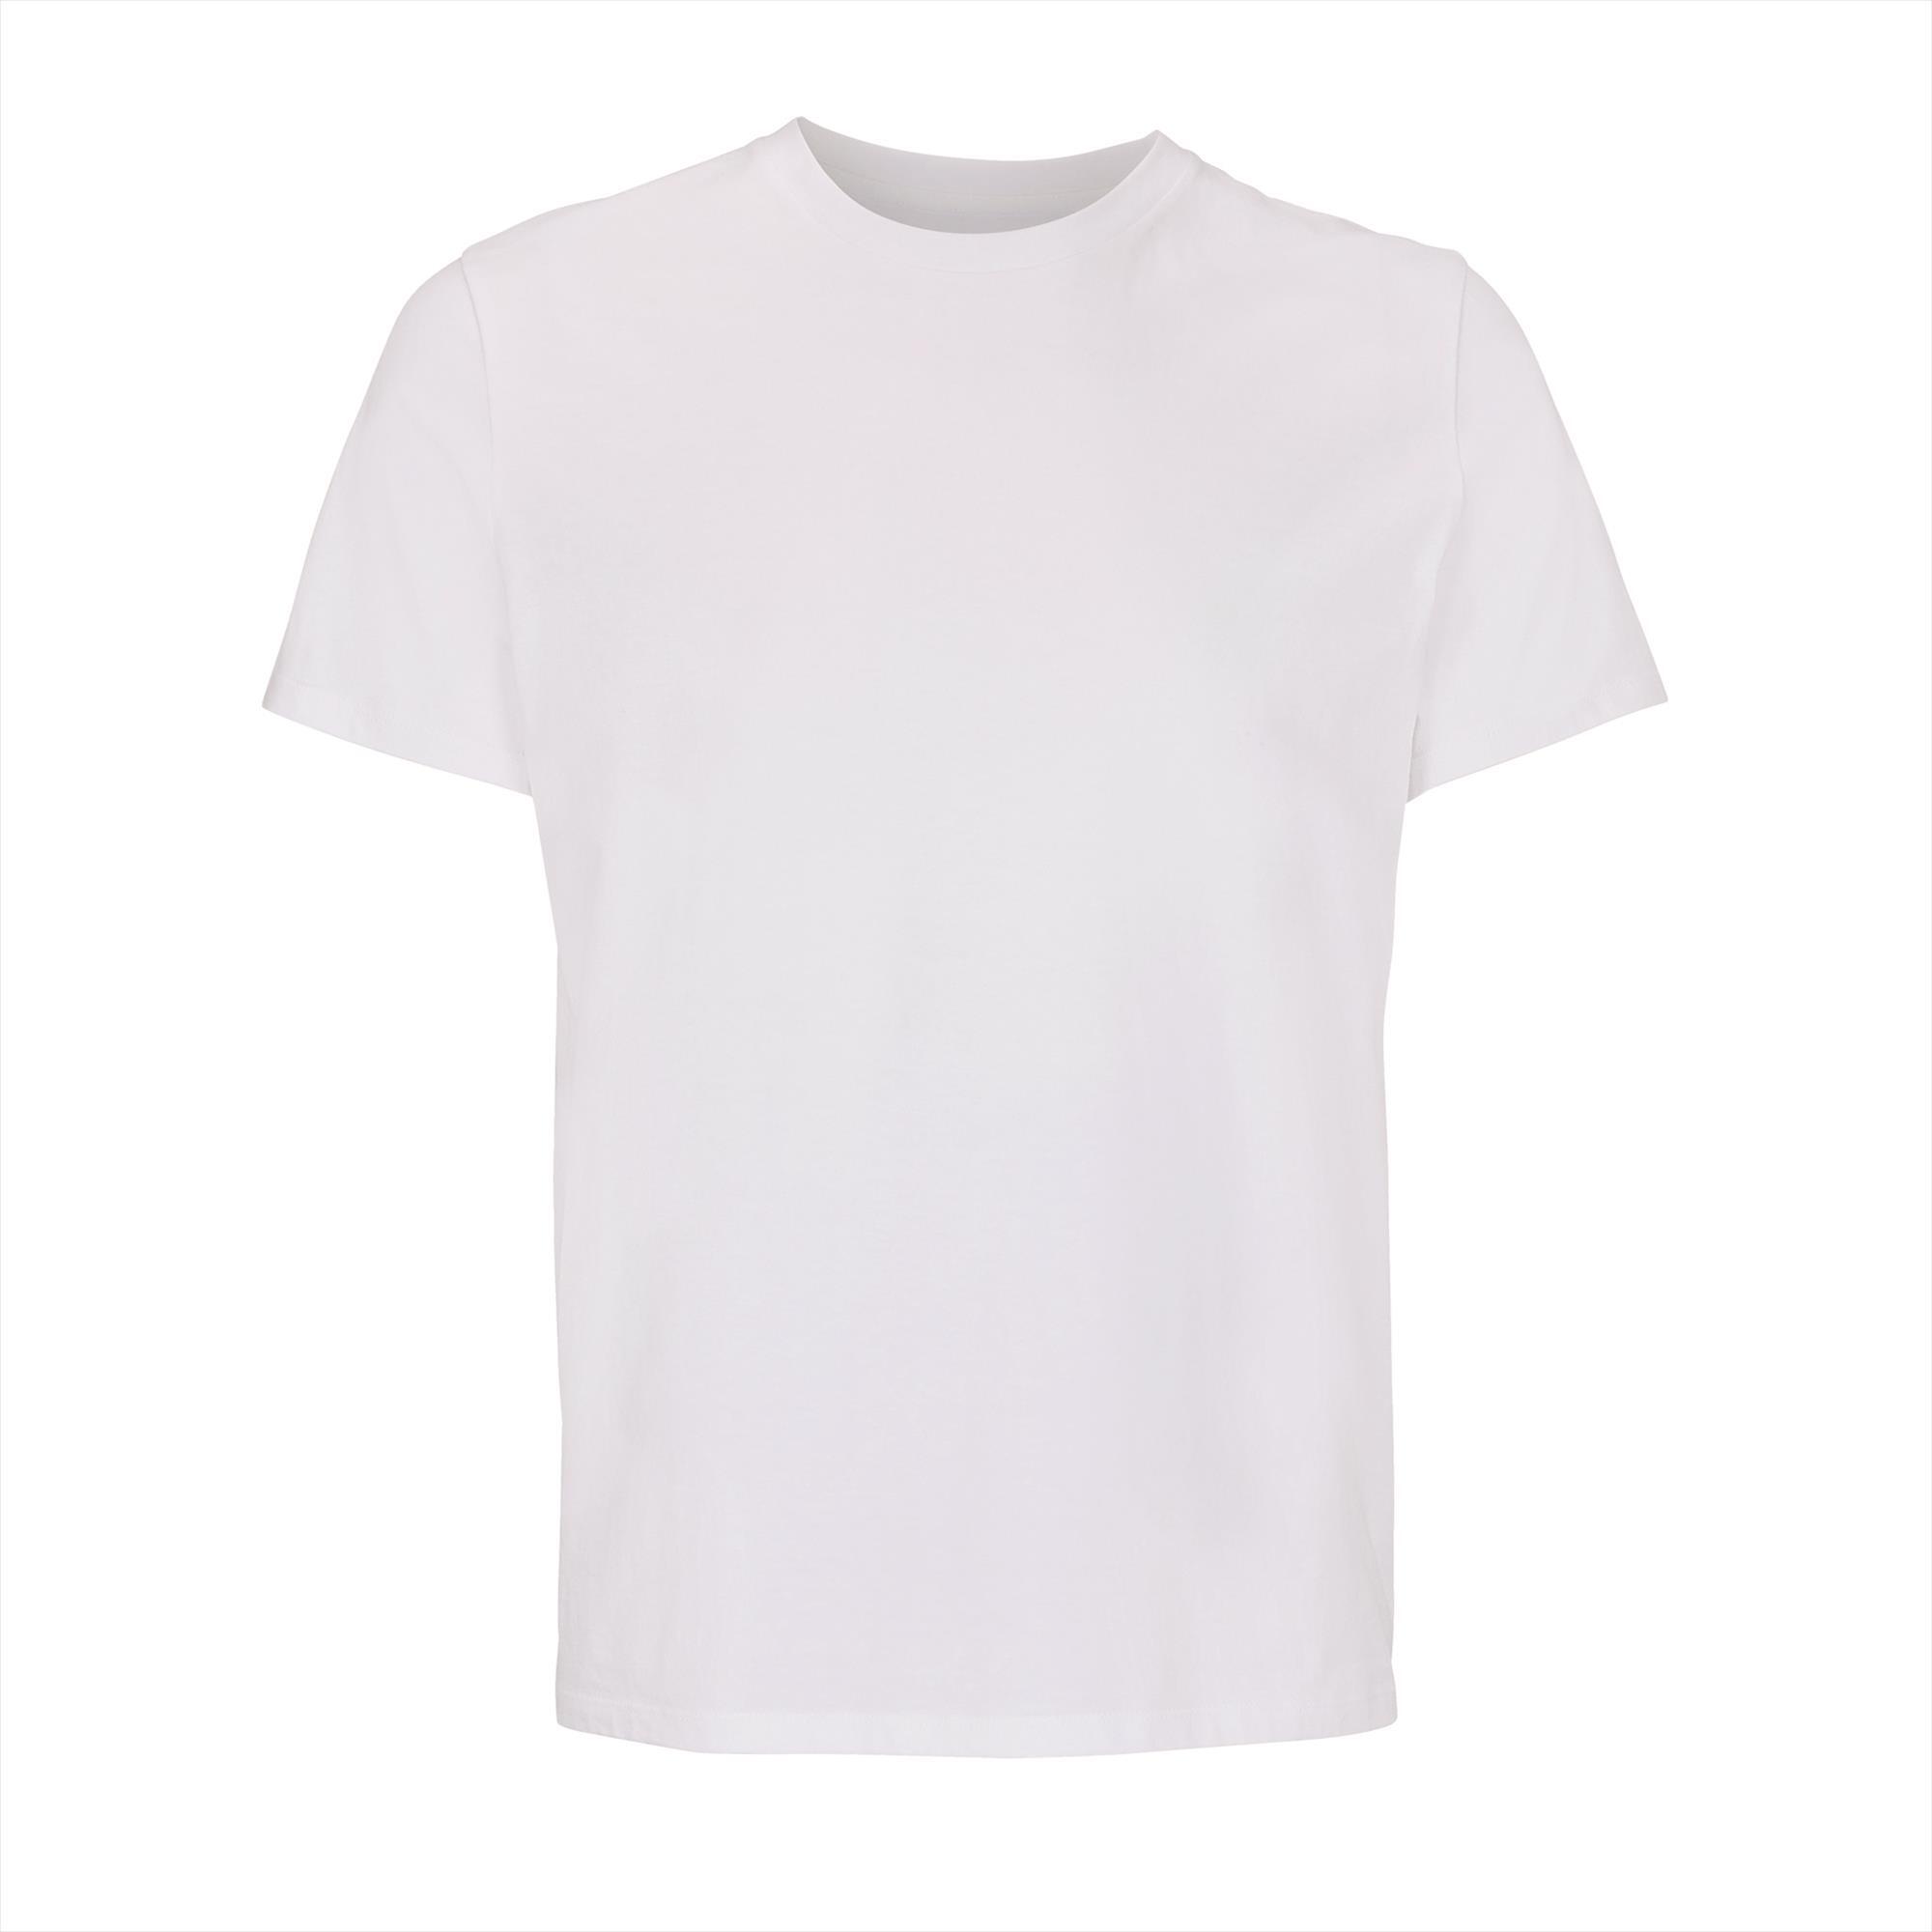 T-shirt heren 100% Organic T-shirt wit perfect voor personalisatie bedrukking.